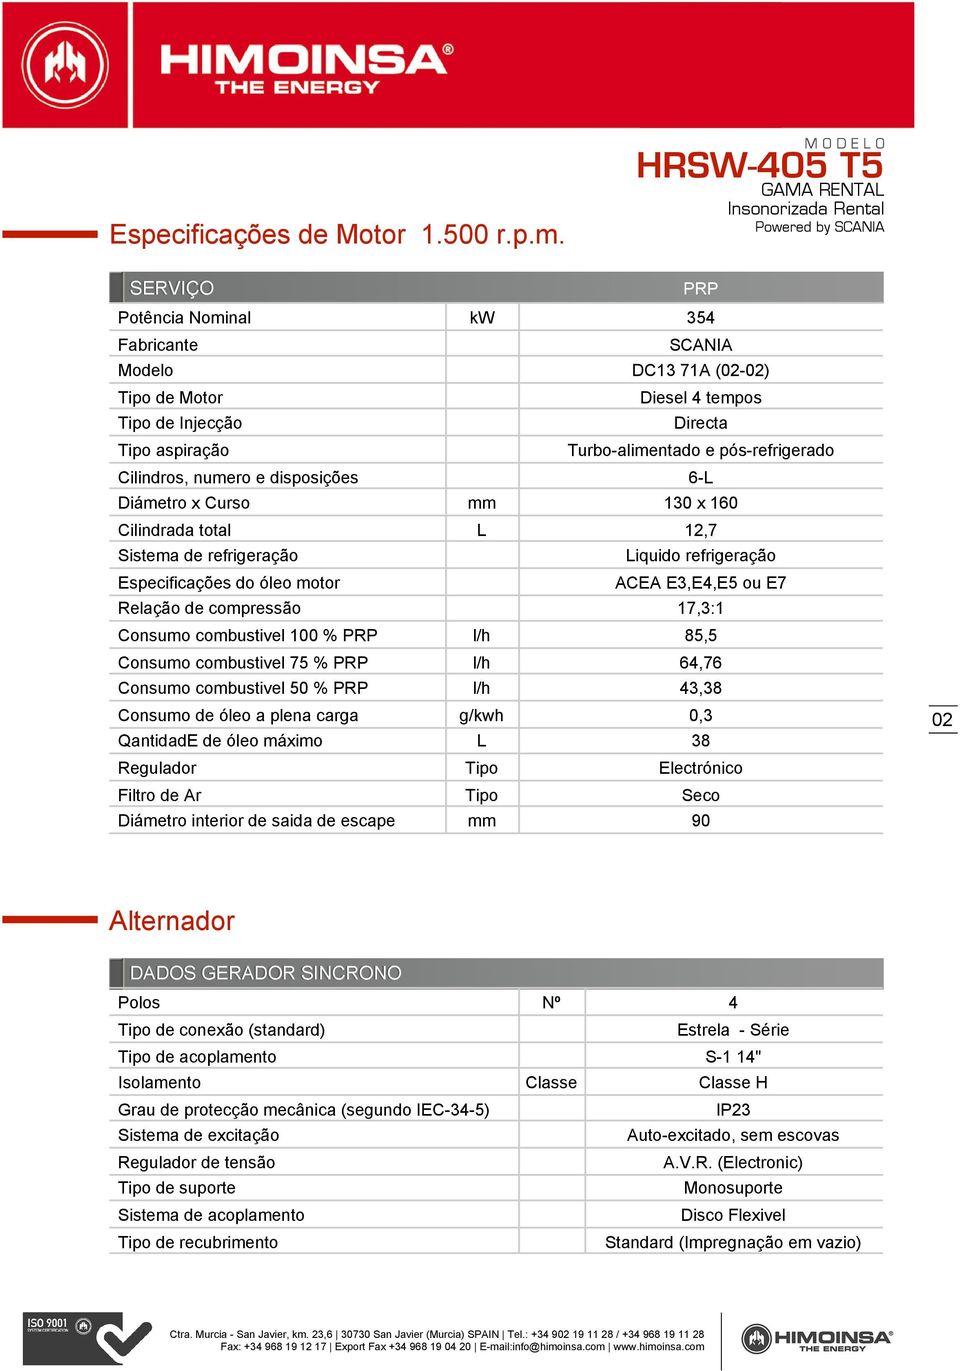 disposições 6-L Diámetro x Curso mm 130 x 160 Cilindrada total L 12,7 Sistema de refrigeração Especificações do óleo motor Liquido refrigeração ACEA E3,E4,E5 ou E7 Relação de compressão 17,3:1